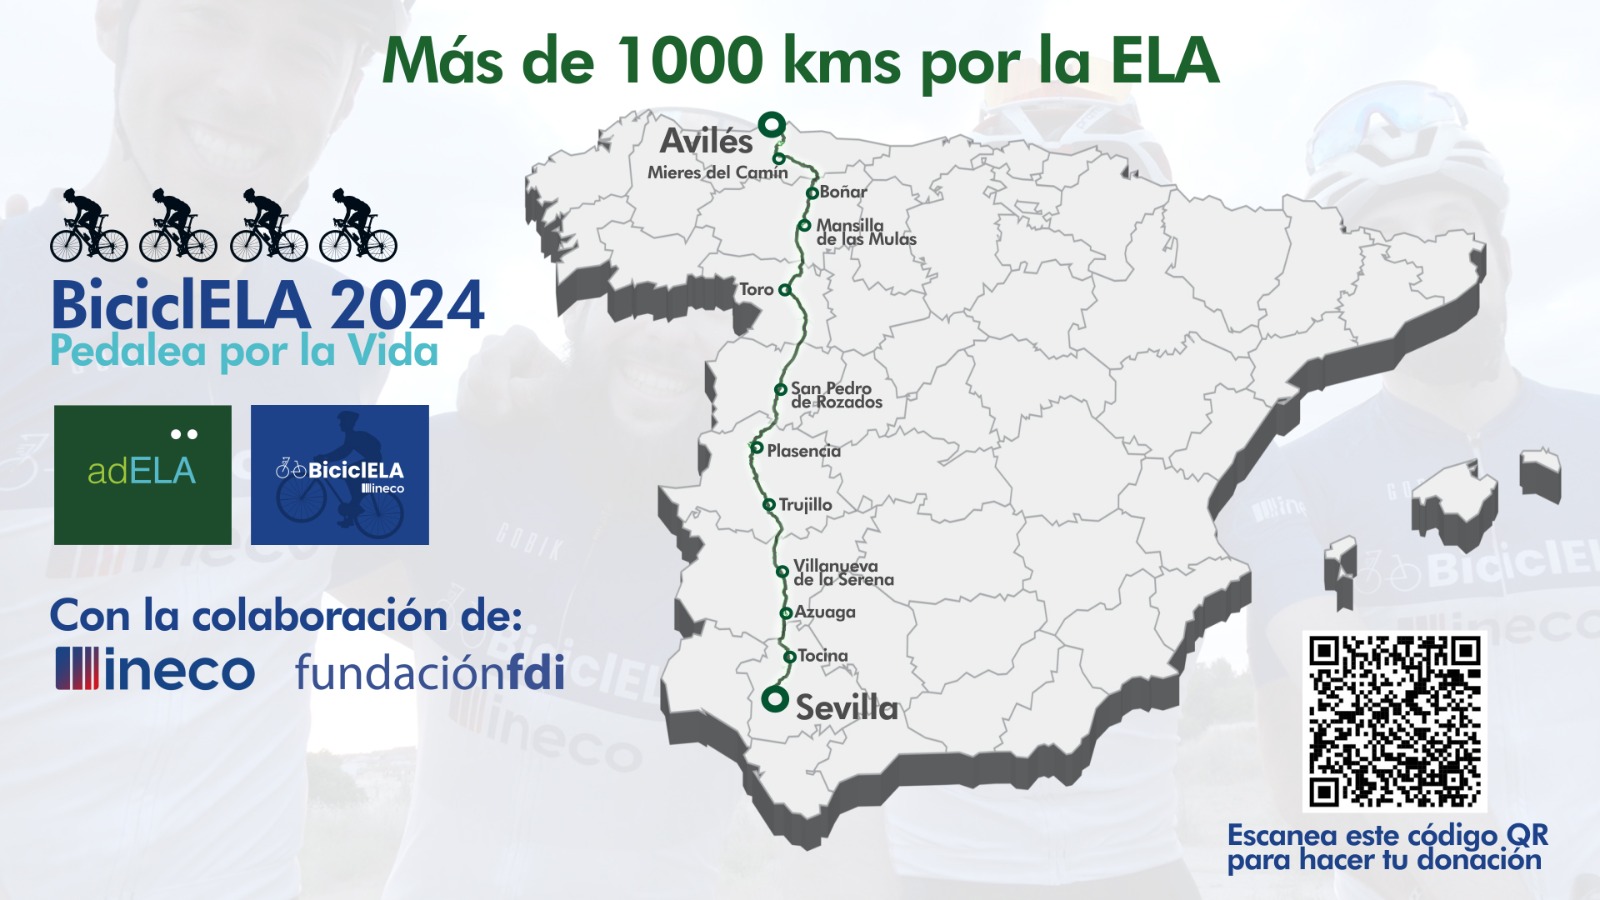 Mapa de España con la ruta que seguirán los ciclistas participantes en el reto BiciclELA